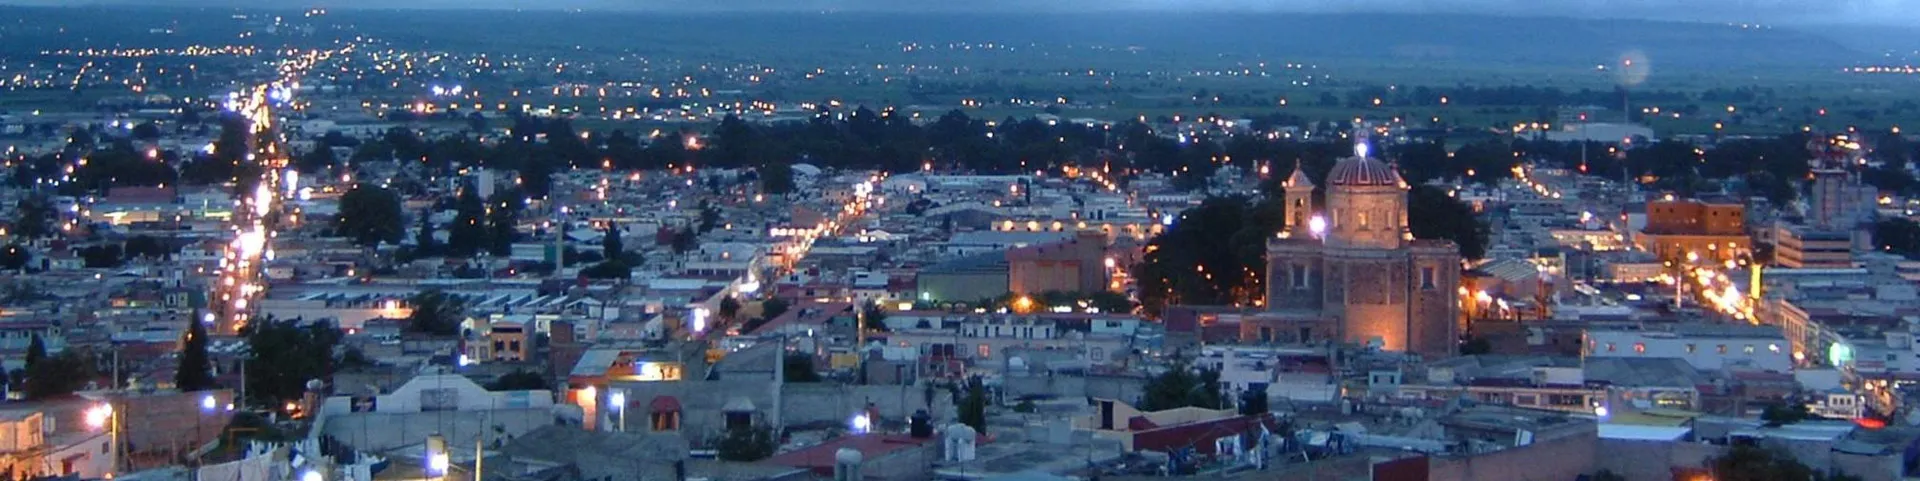 Nota sobre La vida nocturna en Puebla